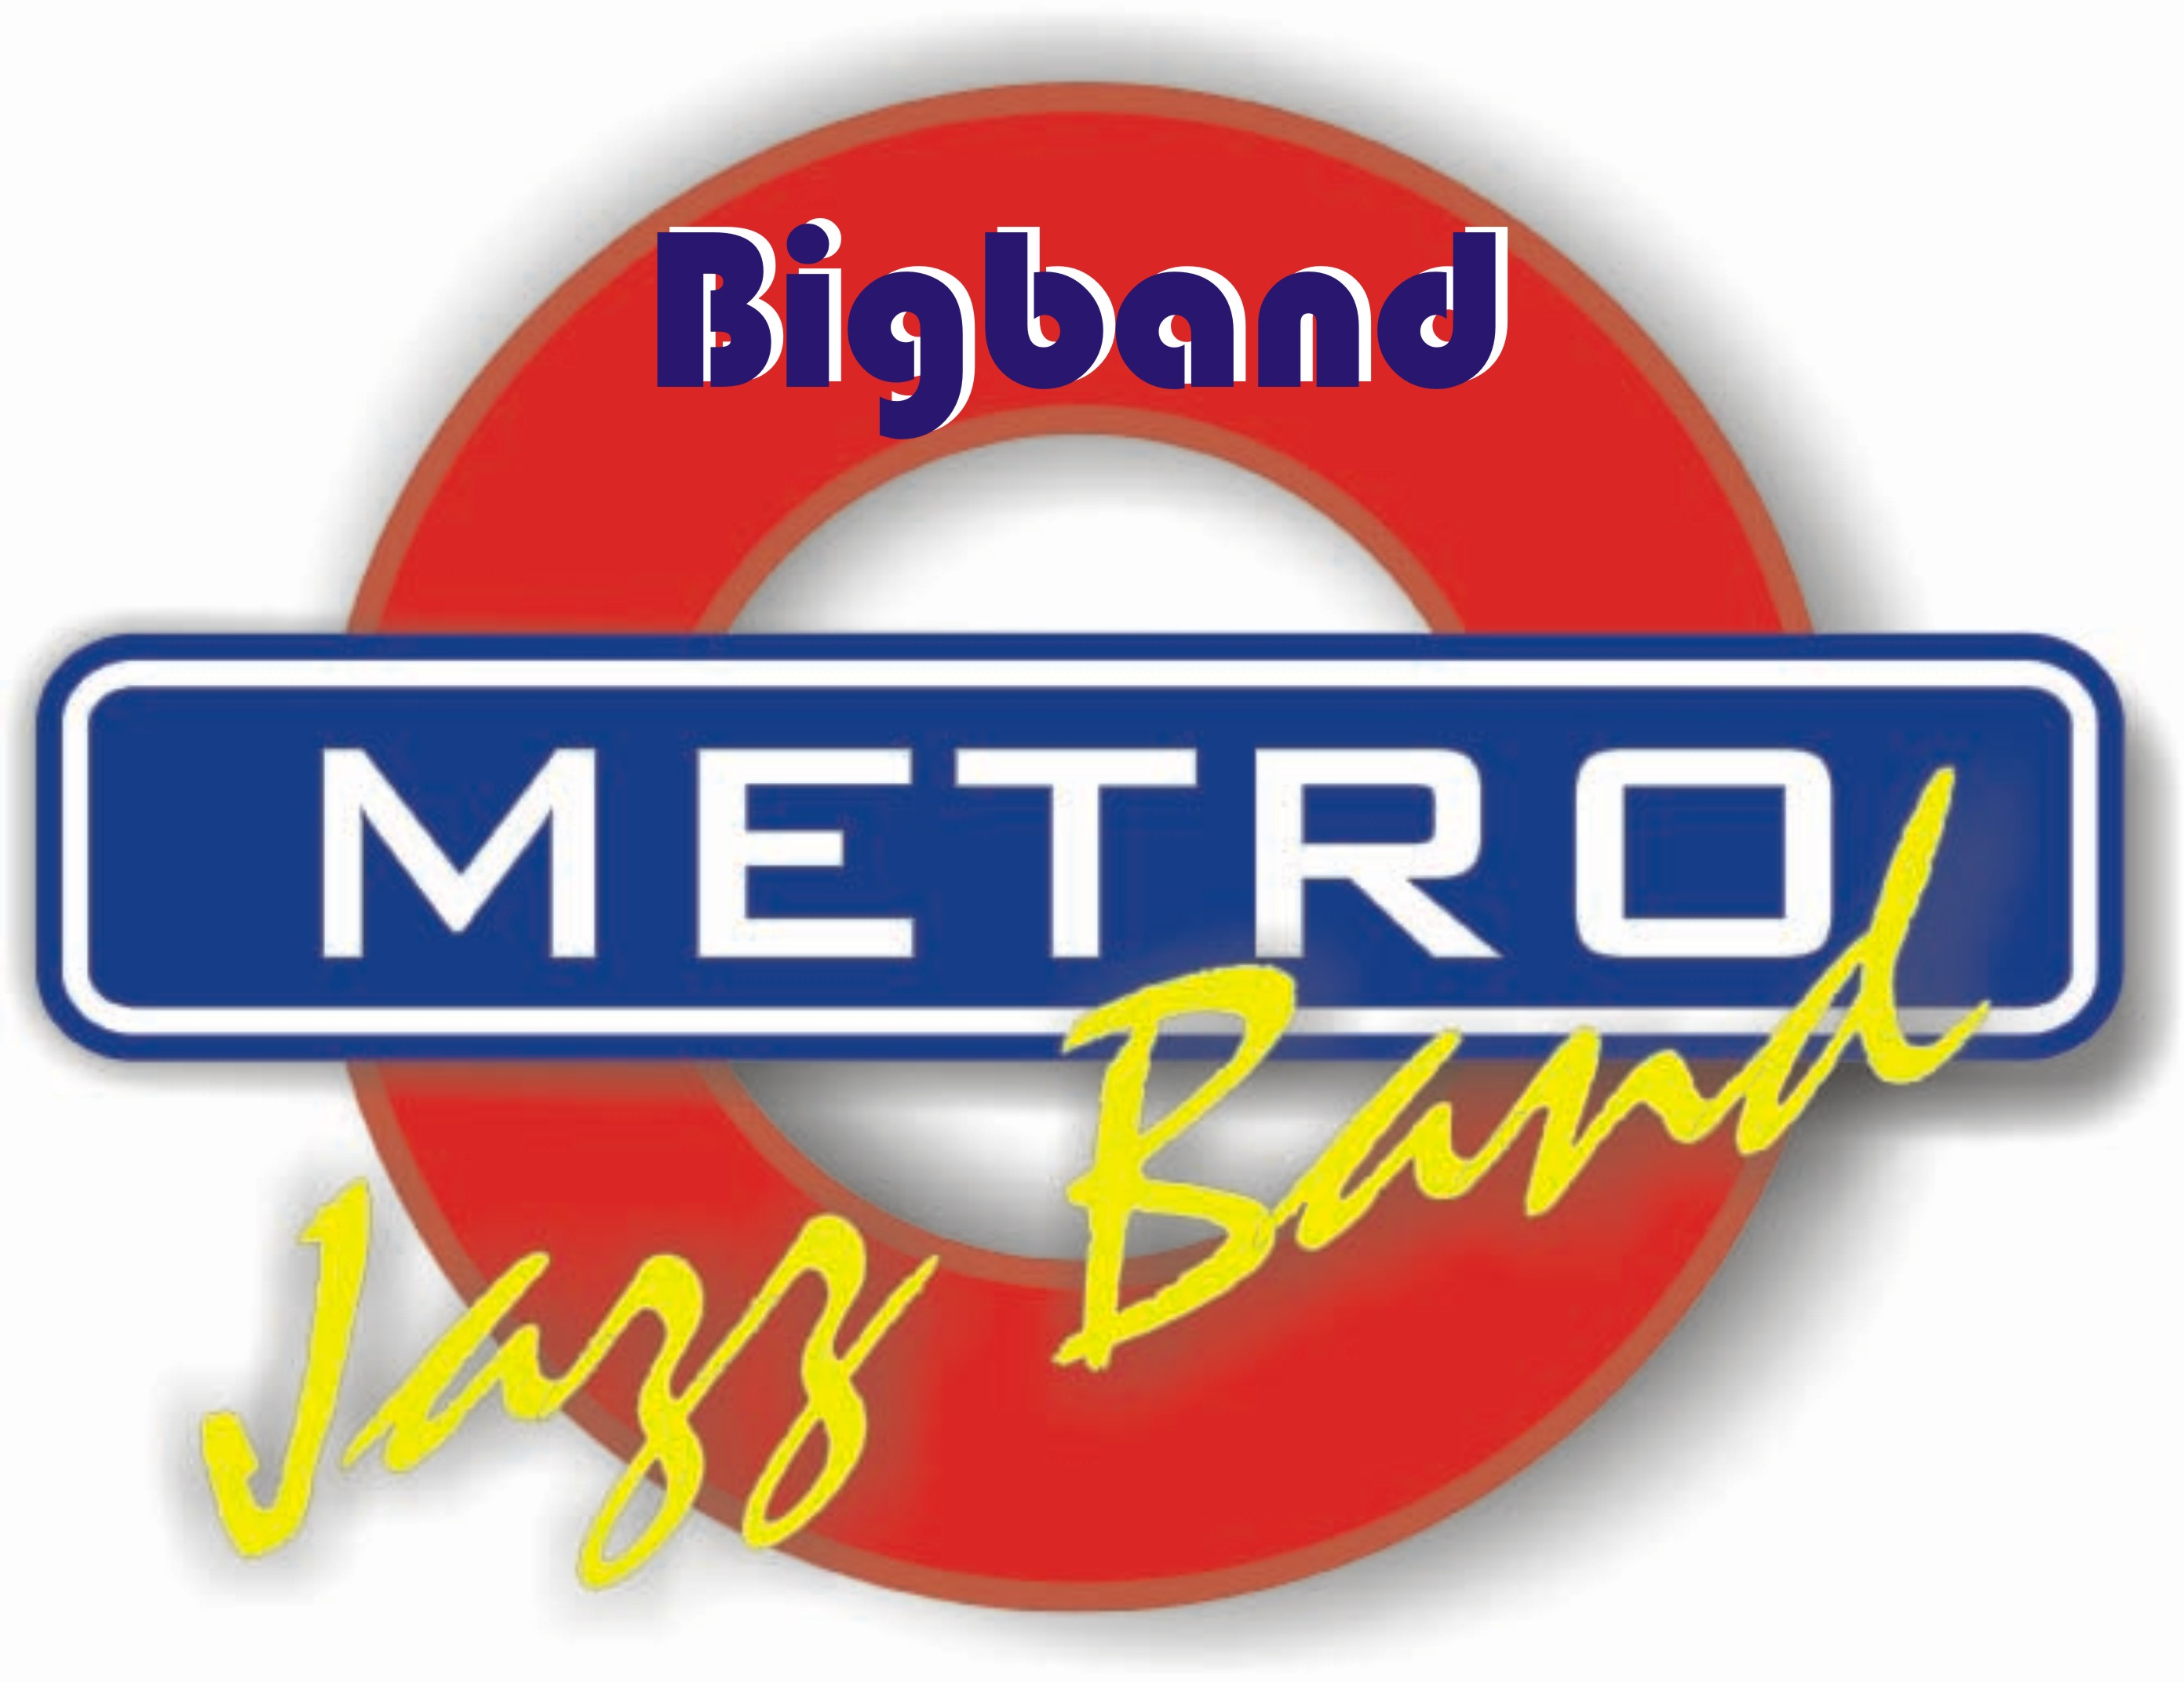 Metro-Jazz-Bigband-Logo